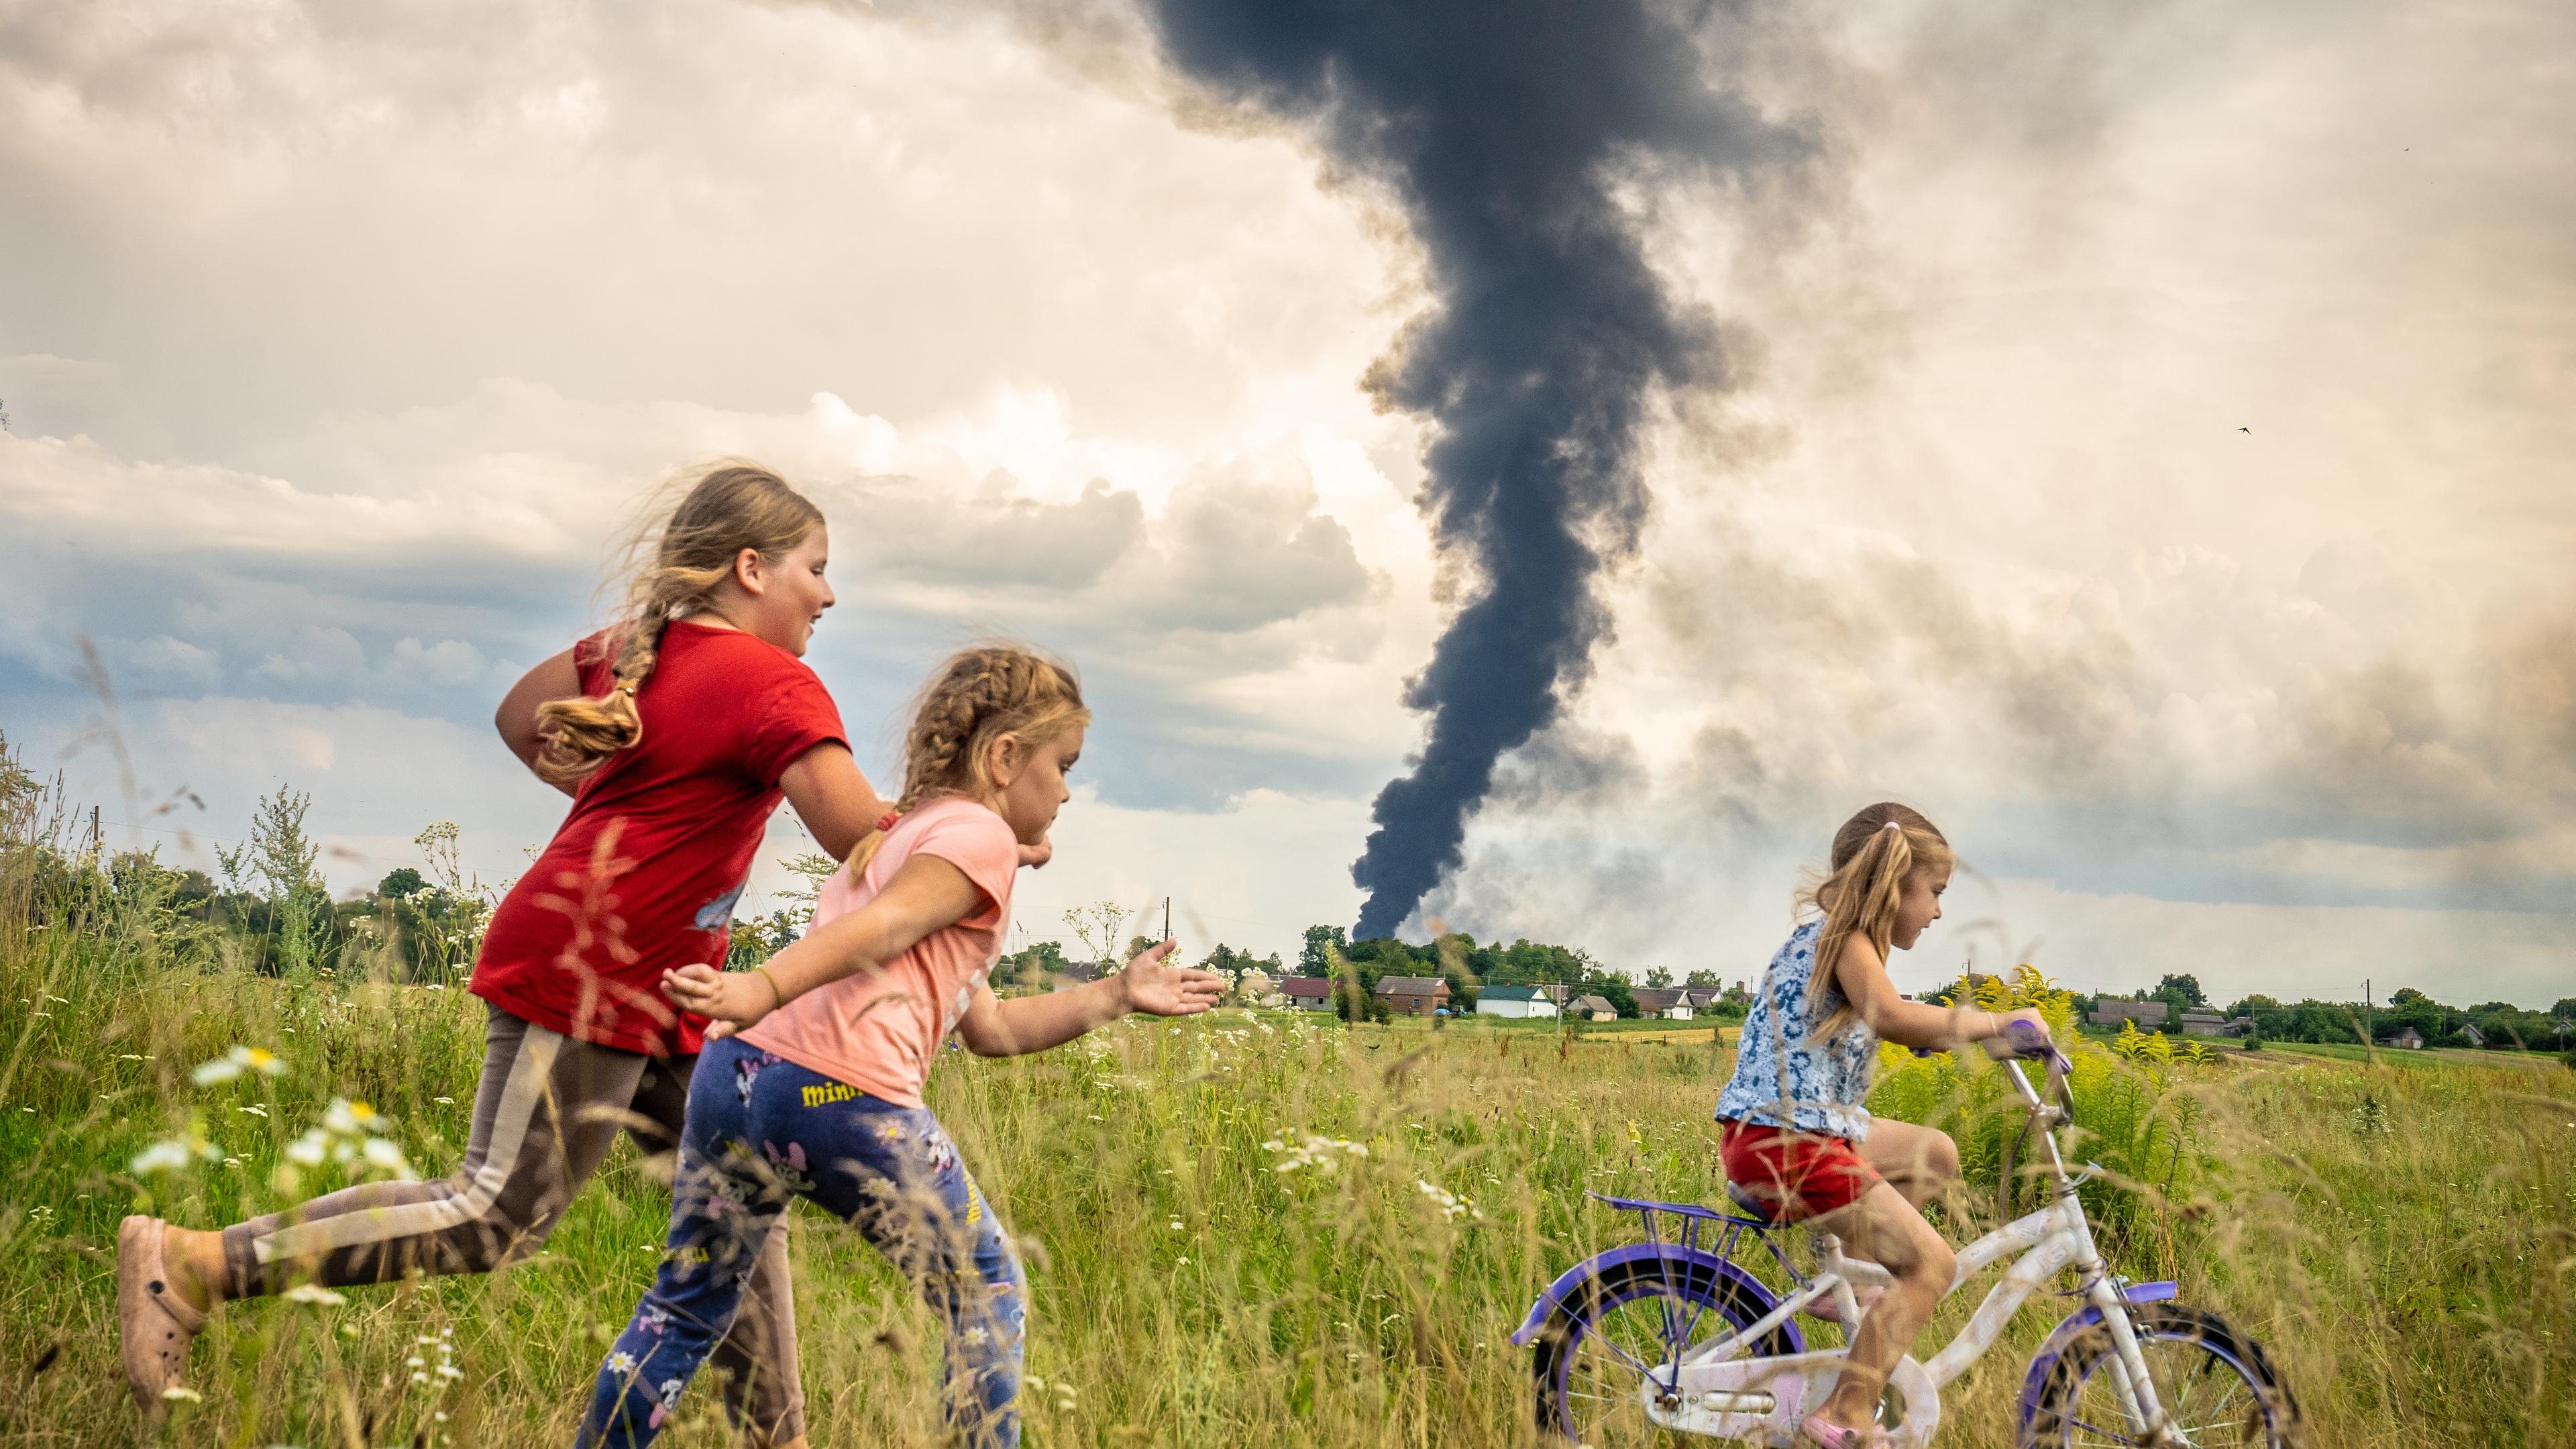 Drei Mädchen fahren Fahrrad in einem Feld, dahinter ist eine schwarze Rauchwolke zu sehen.